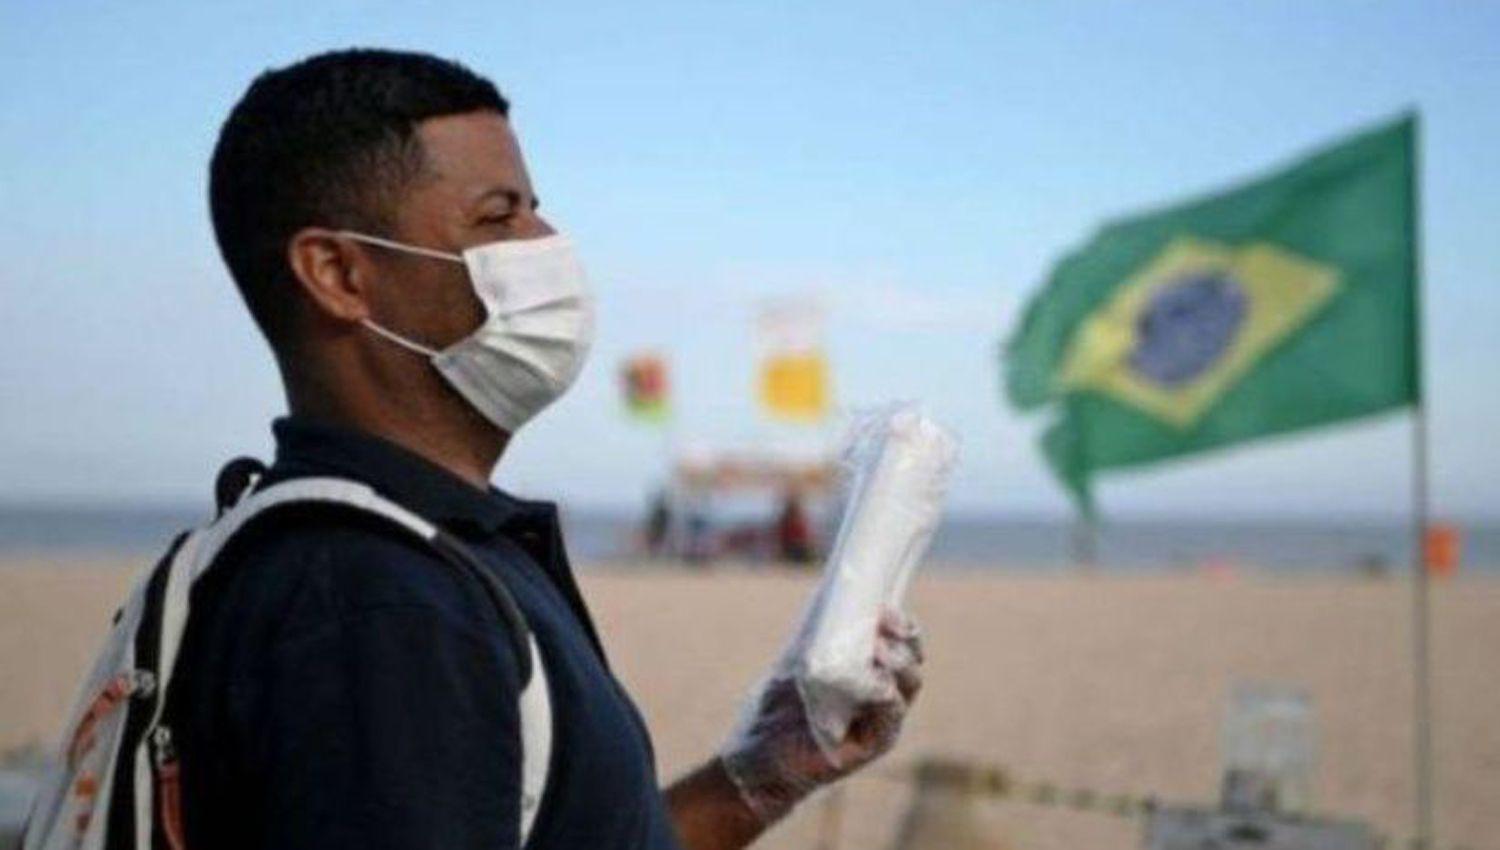 Brasil registra reacutecord de muertes diarias por COVID-19 y viacutectimas superan las 2000